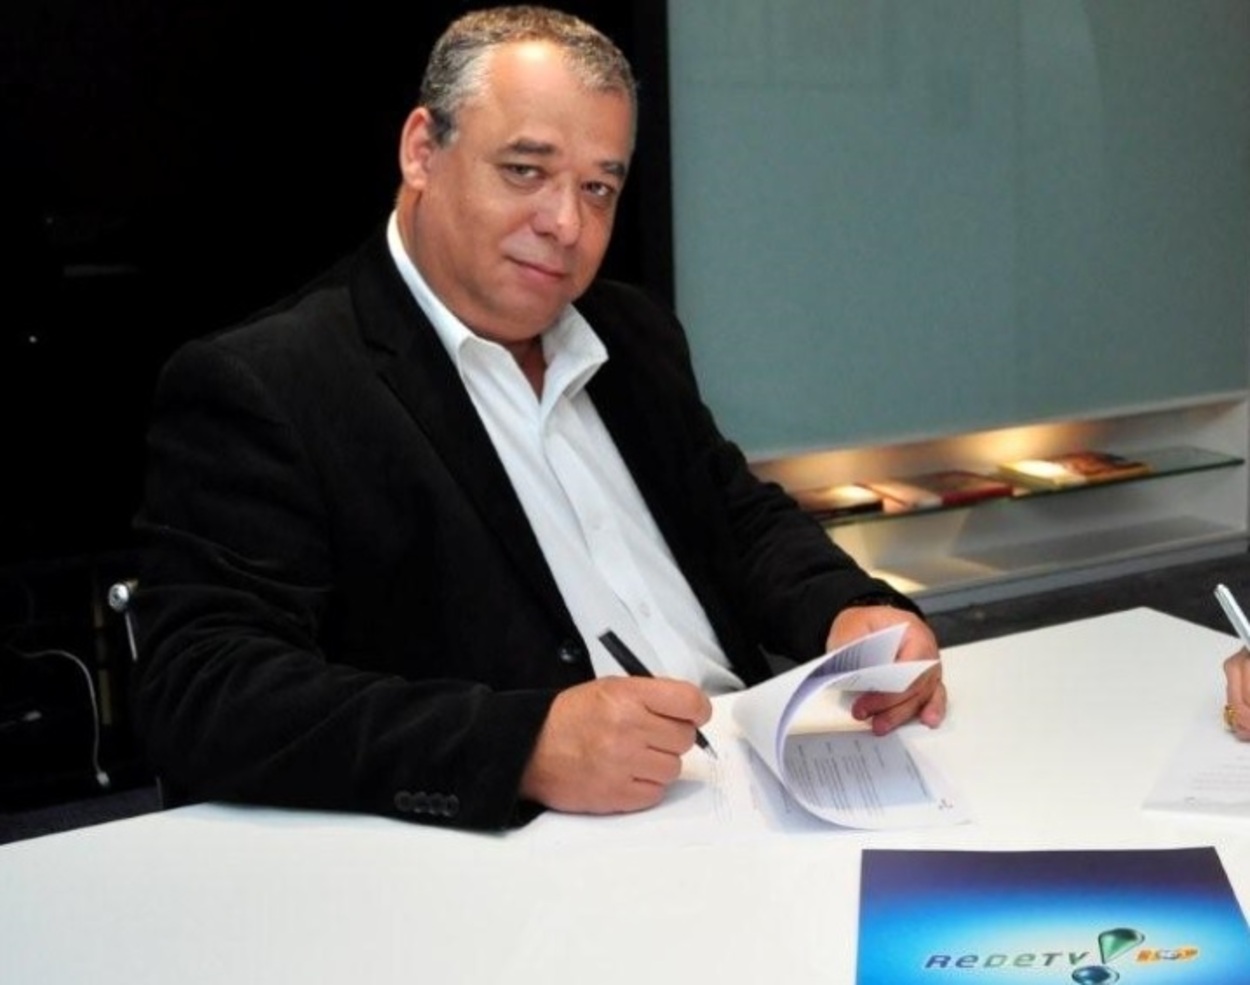 Francisco Almeida, o Chiquinho, diretor de programação da Rede TV!, foi demitido